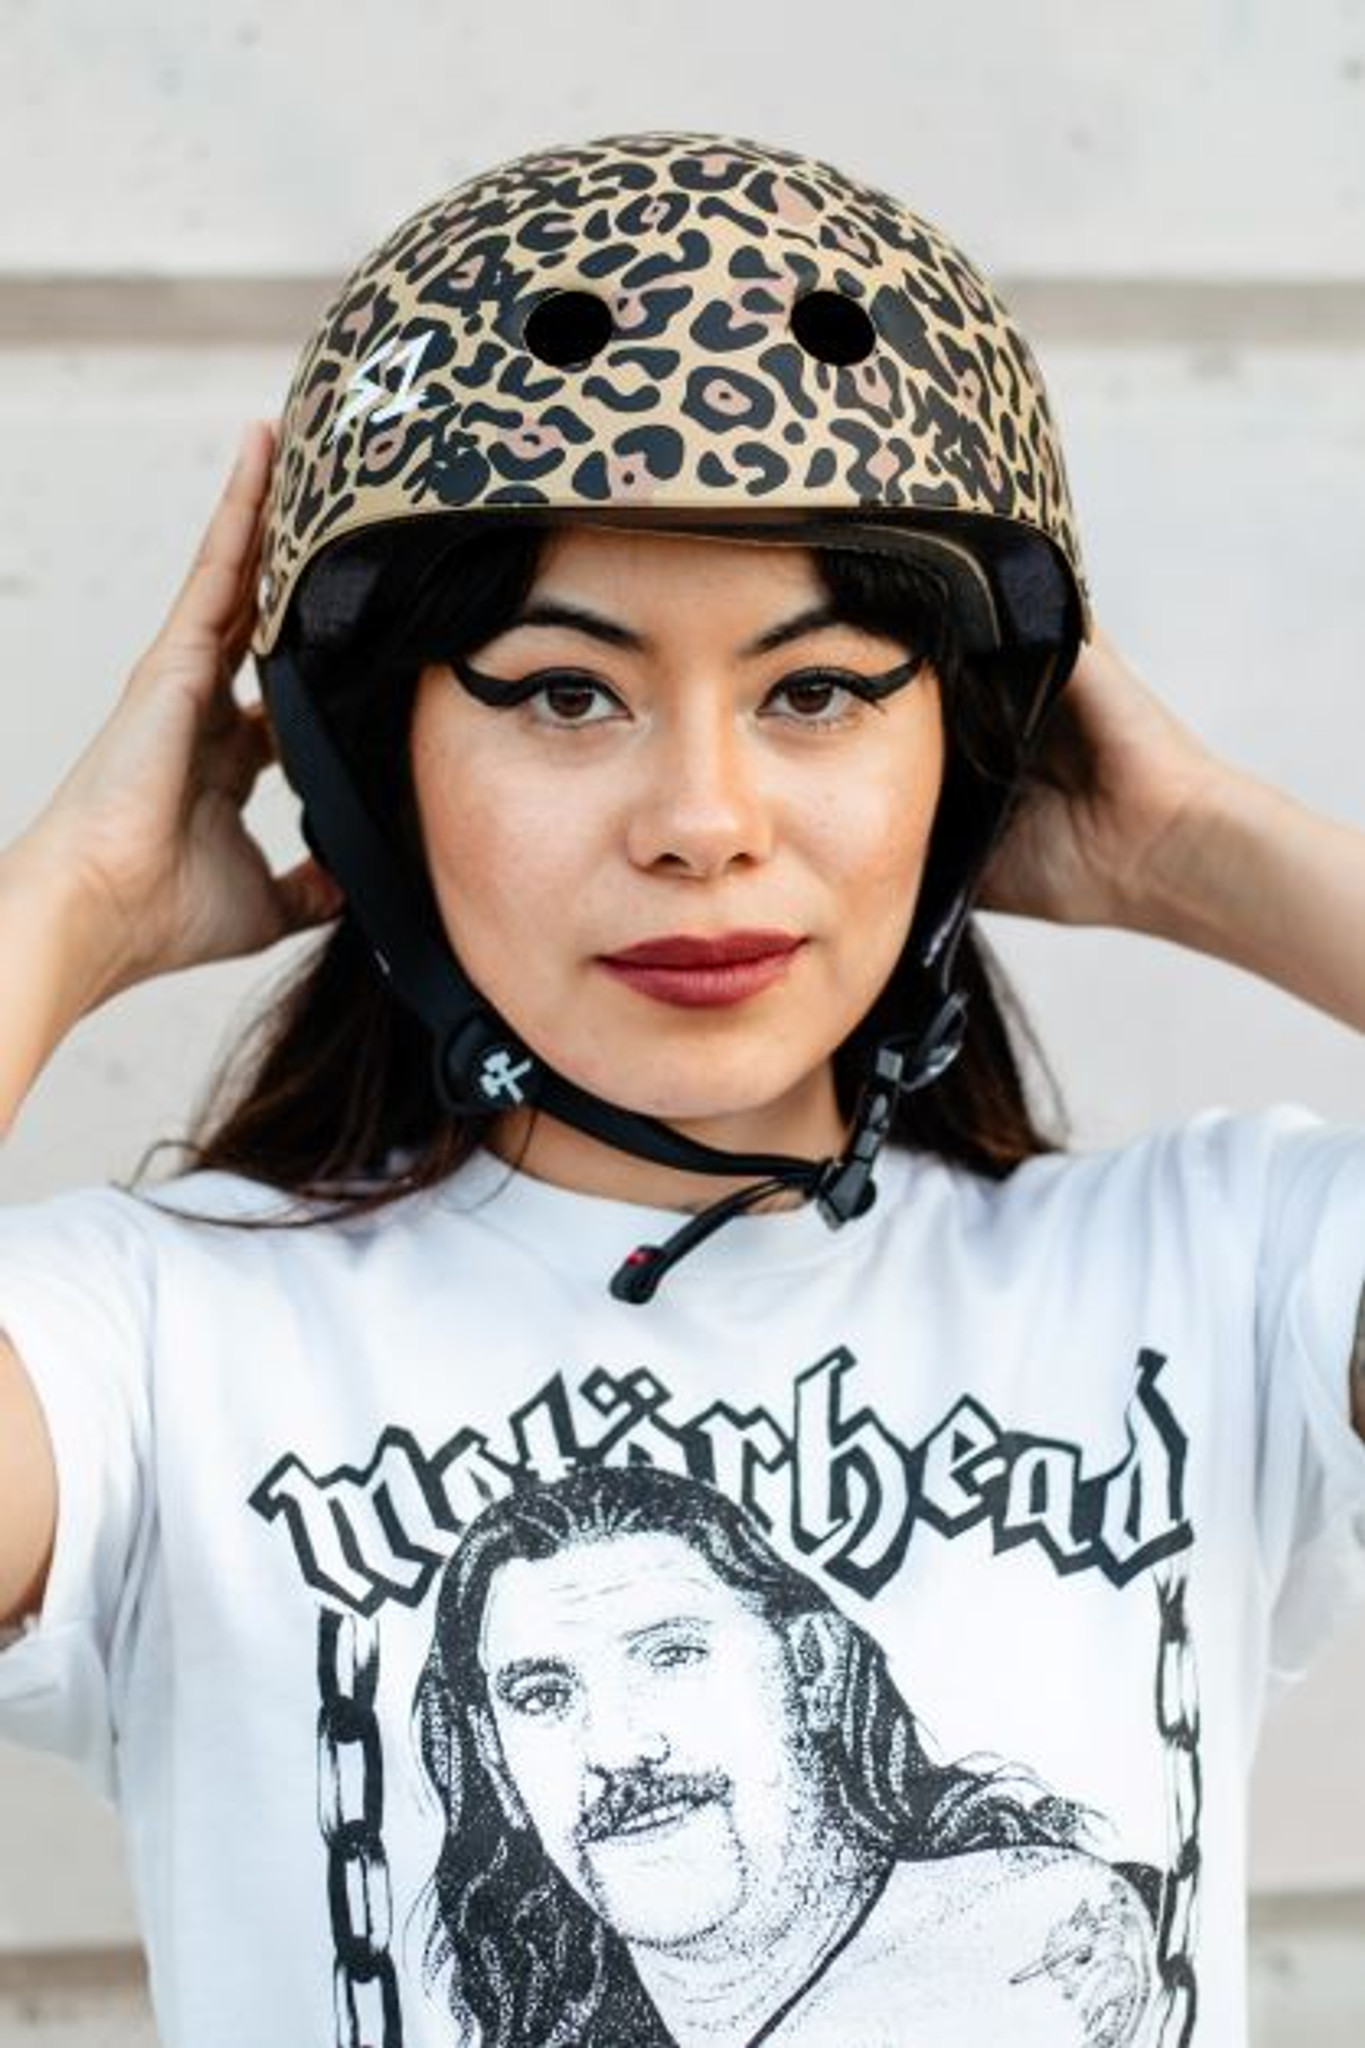 Tan Leopard Print Helmet | Roller Skate Helmet | Bike Helmet